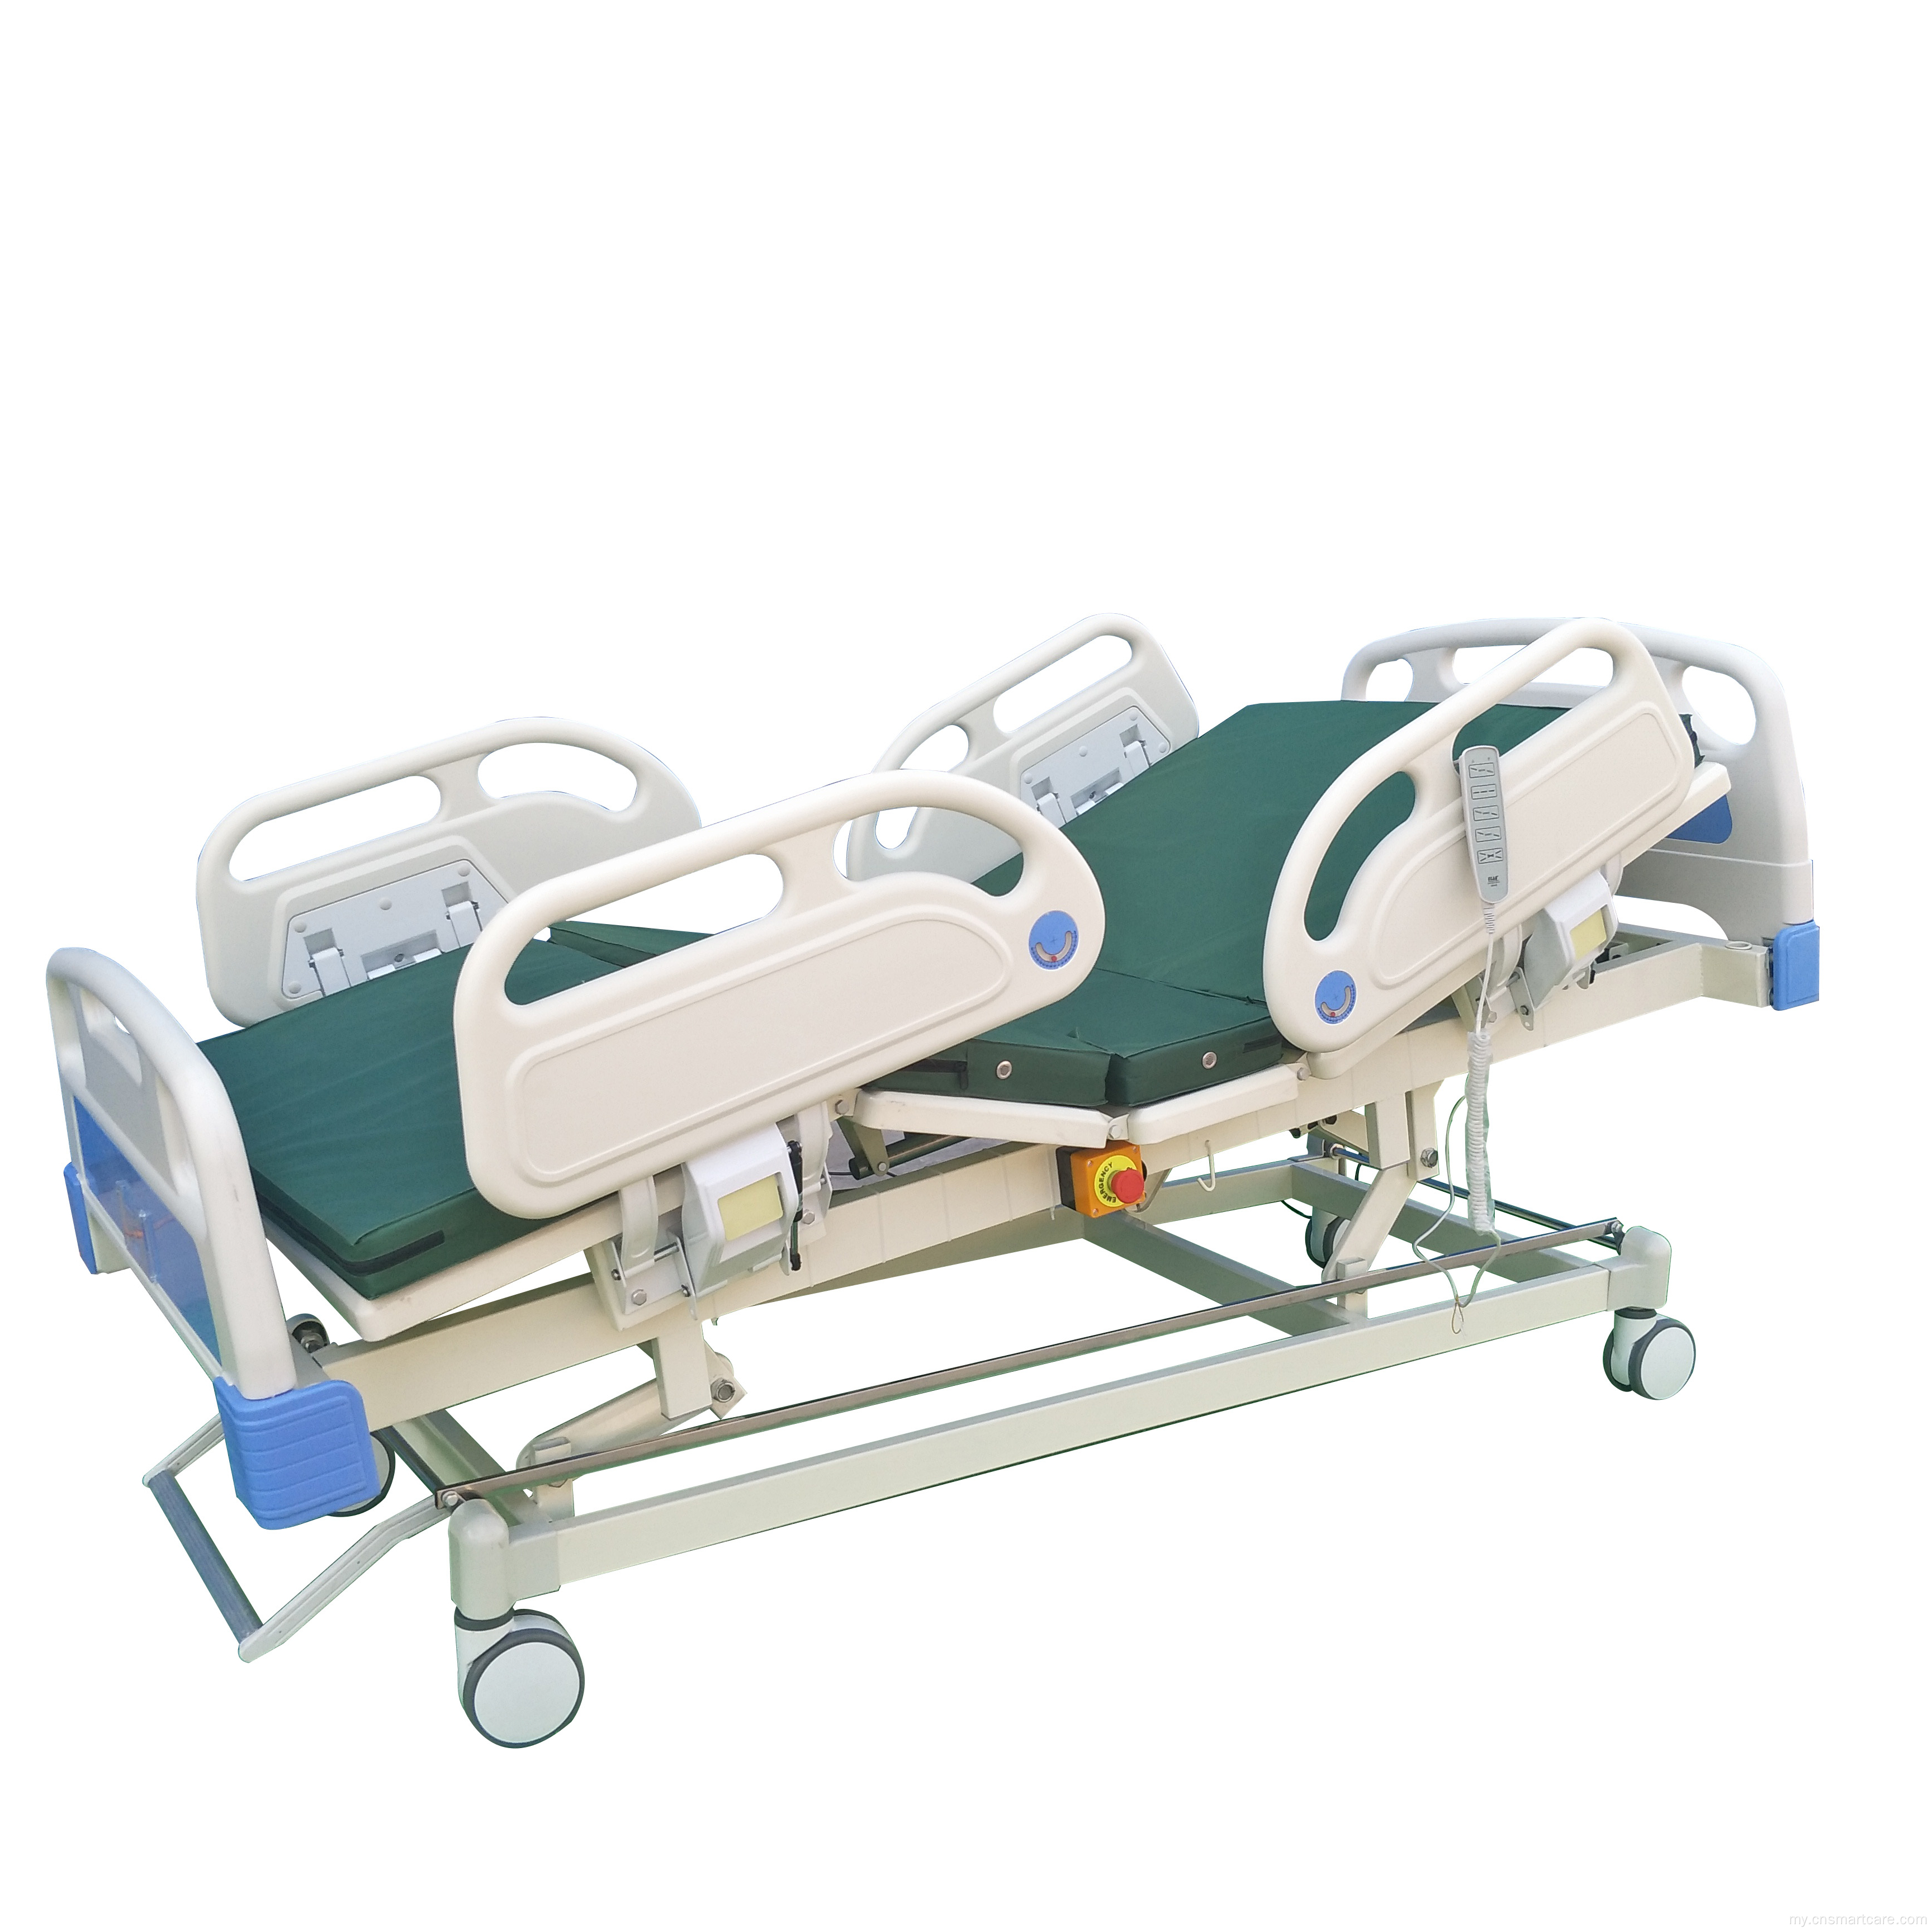 စားသောက်ပွဲစားပွဲတင်လျှပ်စစ်ငါး function ကို ICU ဆေးရုံအိပ်ရာ